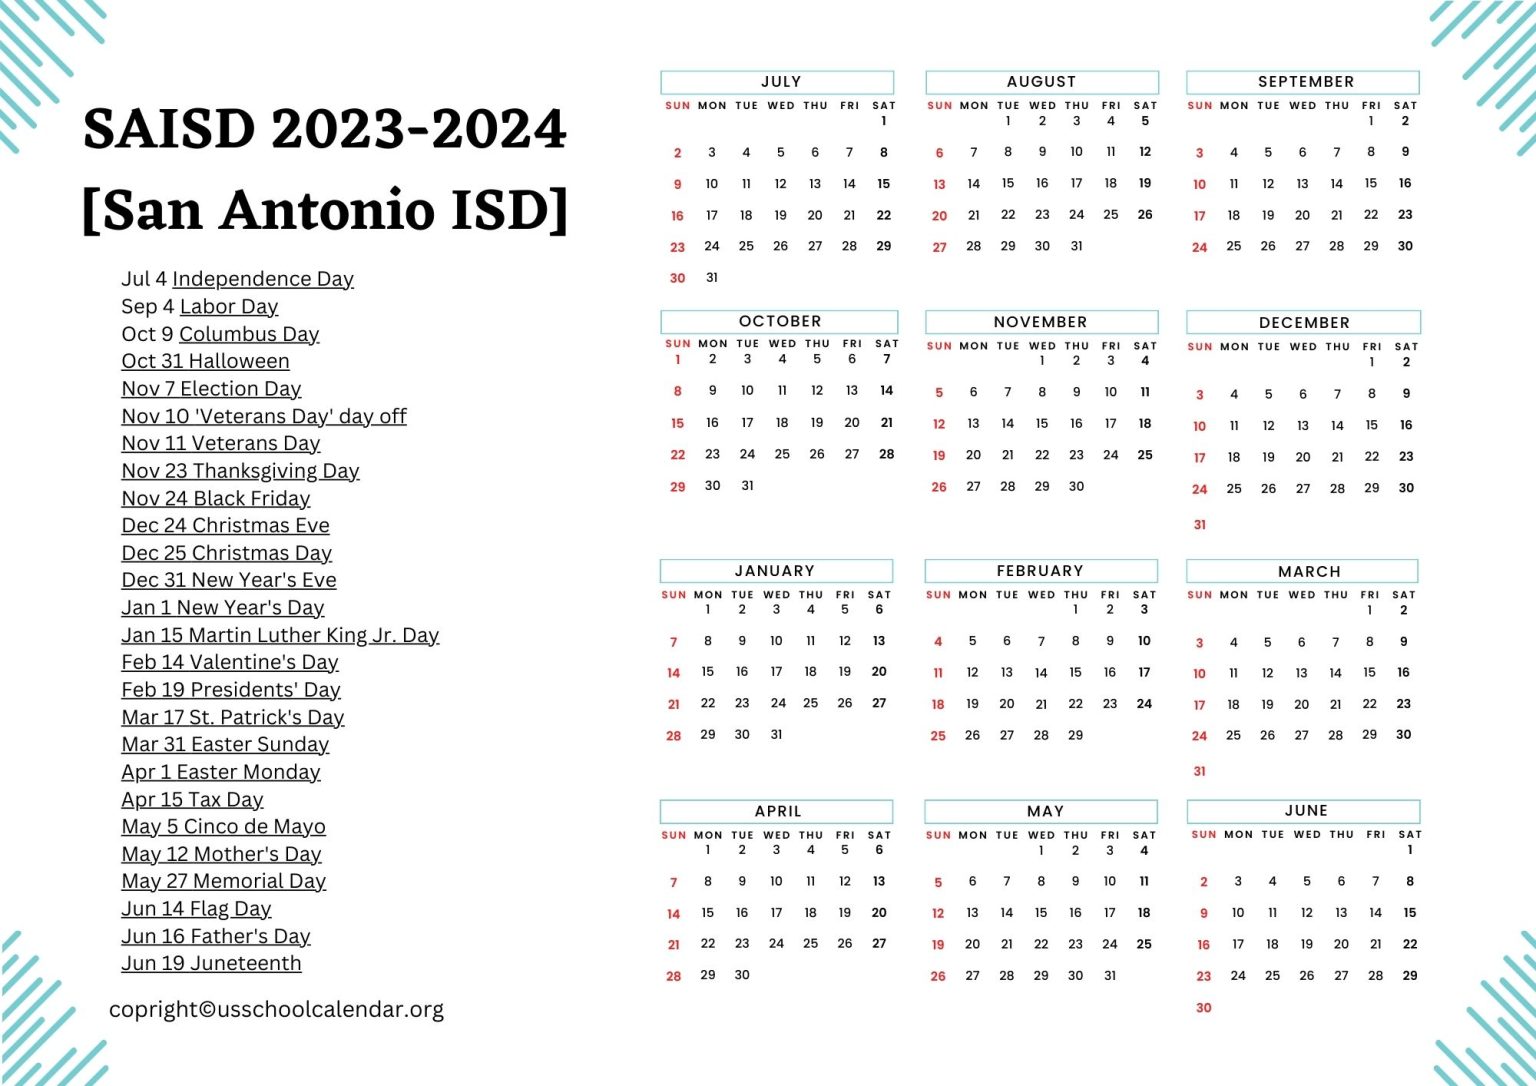 SAISD Calendar with Holidays 20232024 [San Antonio ISD]